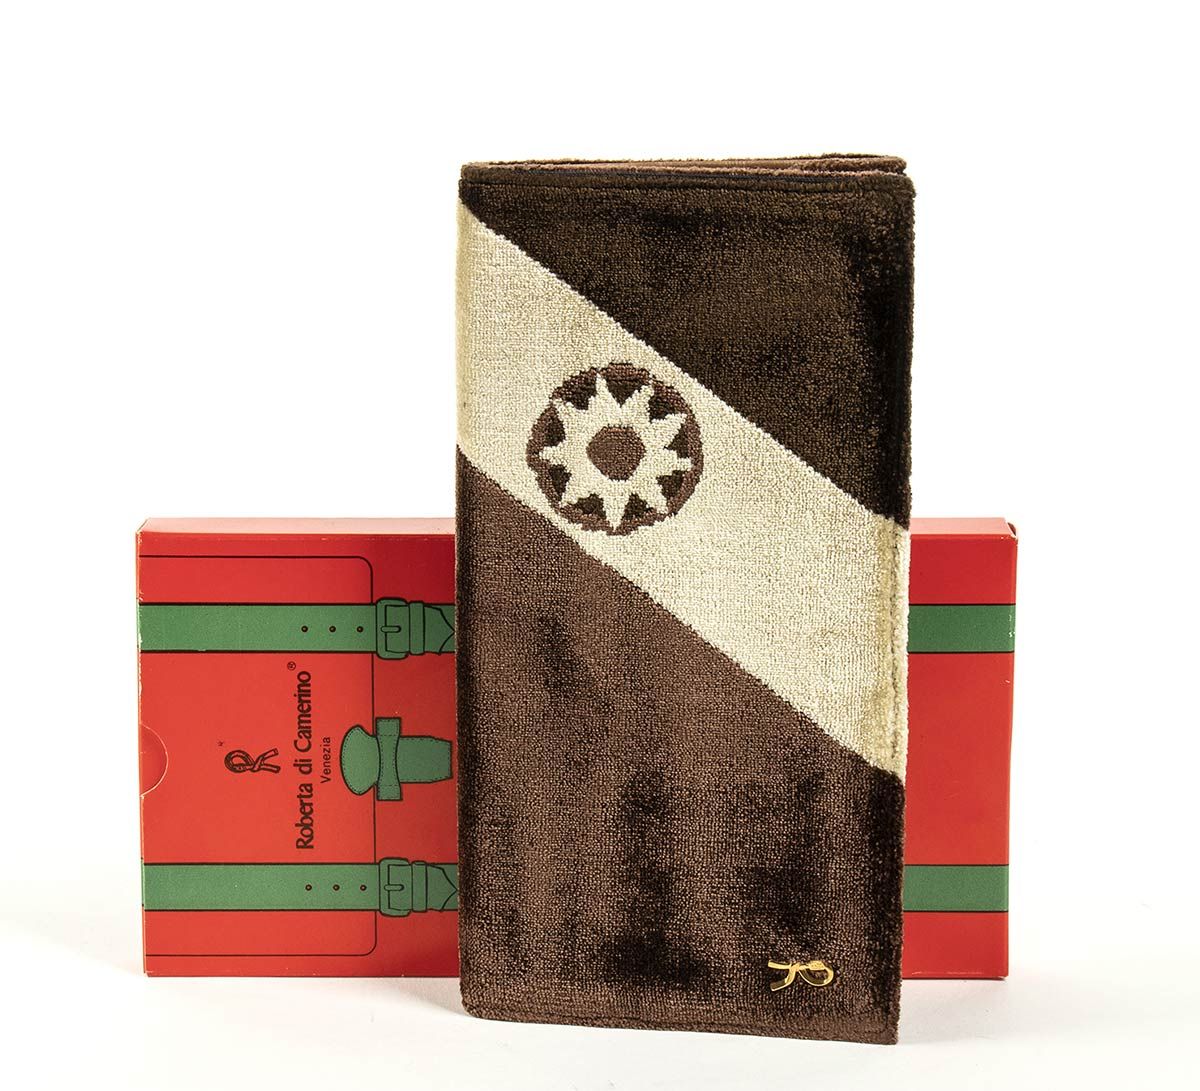 Null 罗伯塔-迪-卡梅里诺

皮具

80年代末



棕色和象牙色天鹅绒棕色皮革钱包，原包装盒



一般情况下评级为B